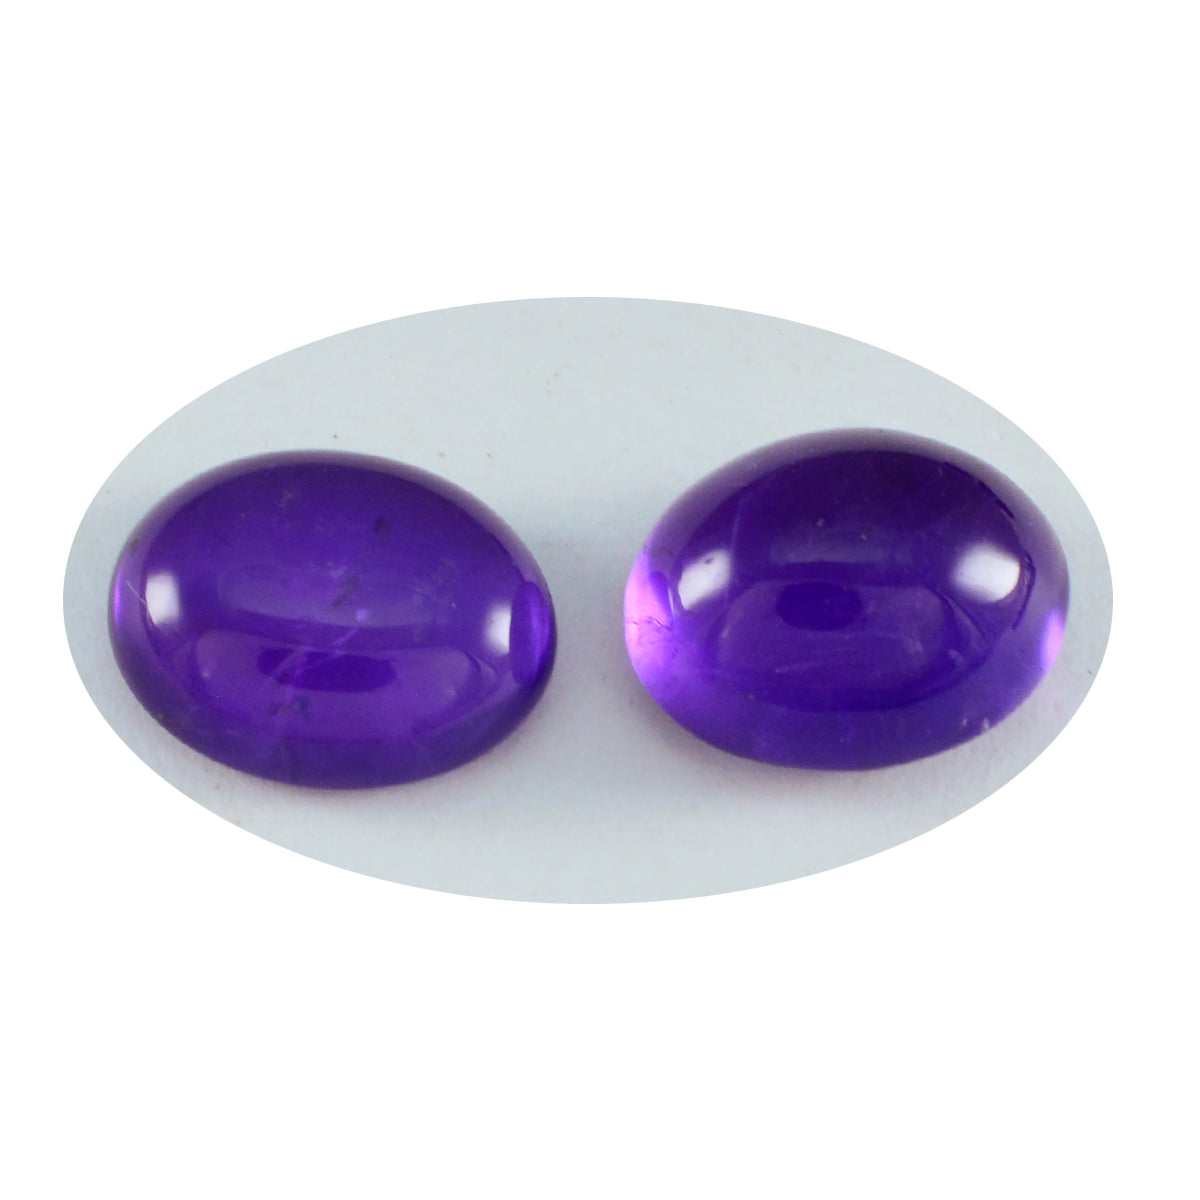 riyogems 1 шт. фиолетовый аметист кабошон 9x11 мм овальной формы красивый качественный свободный драгоценный камень